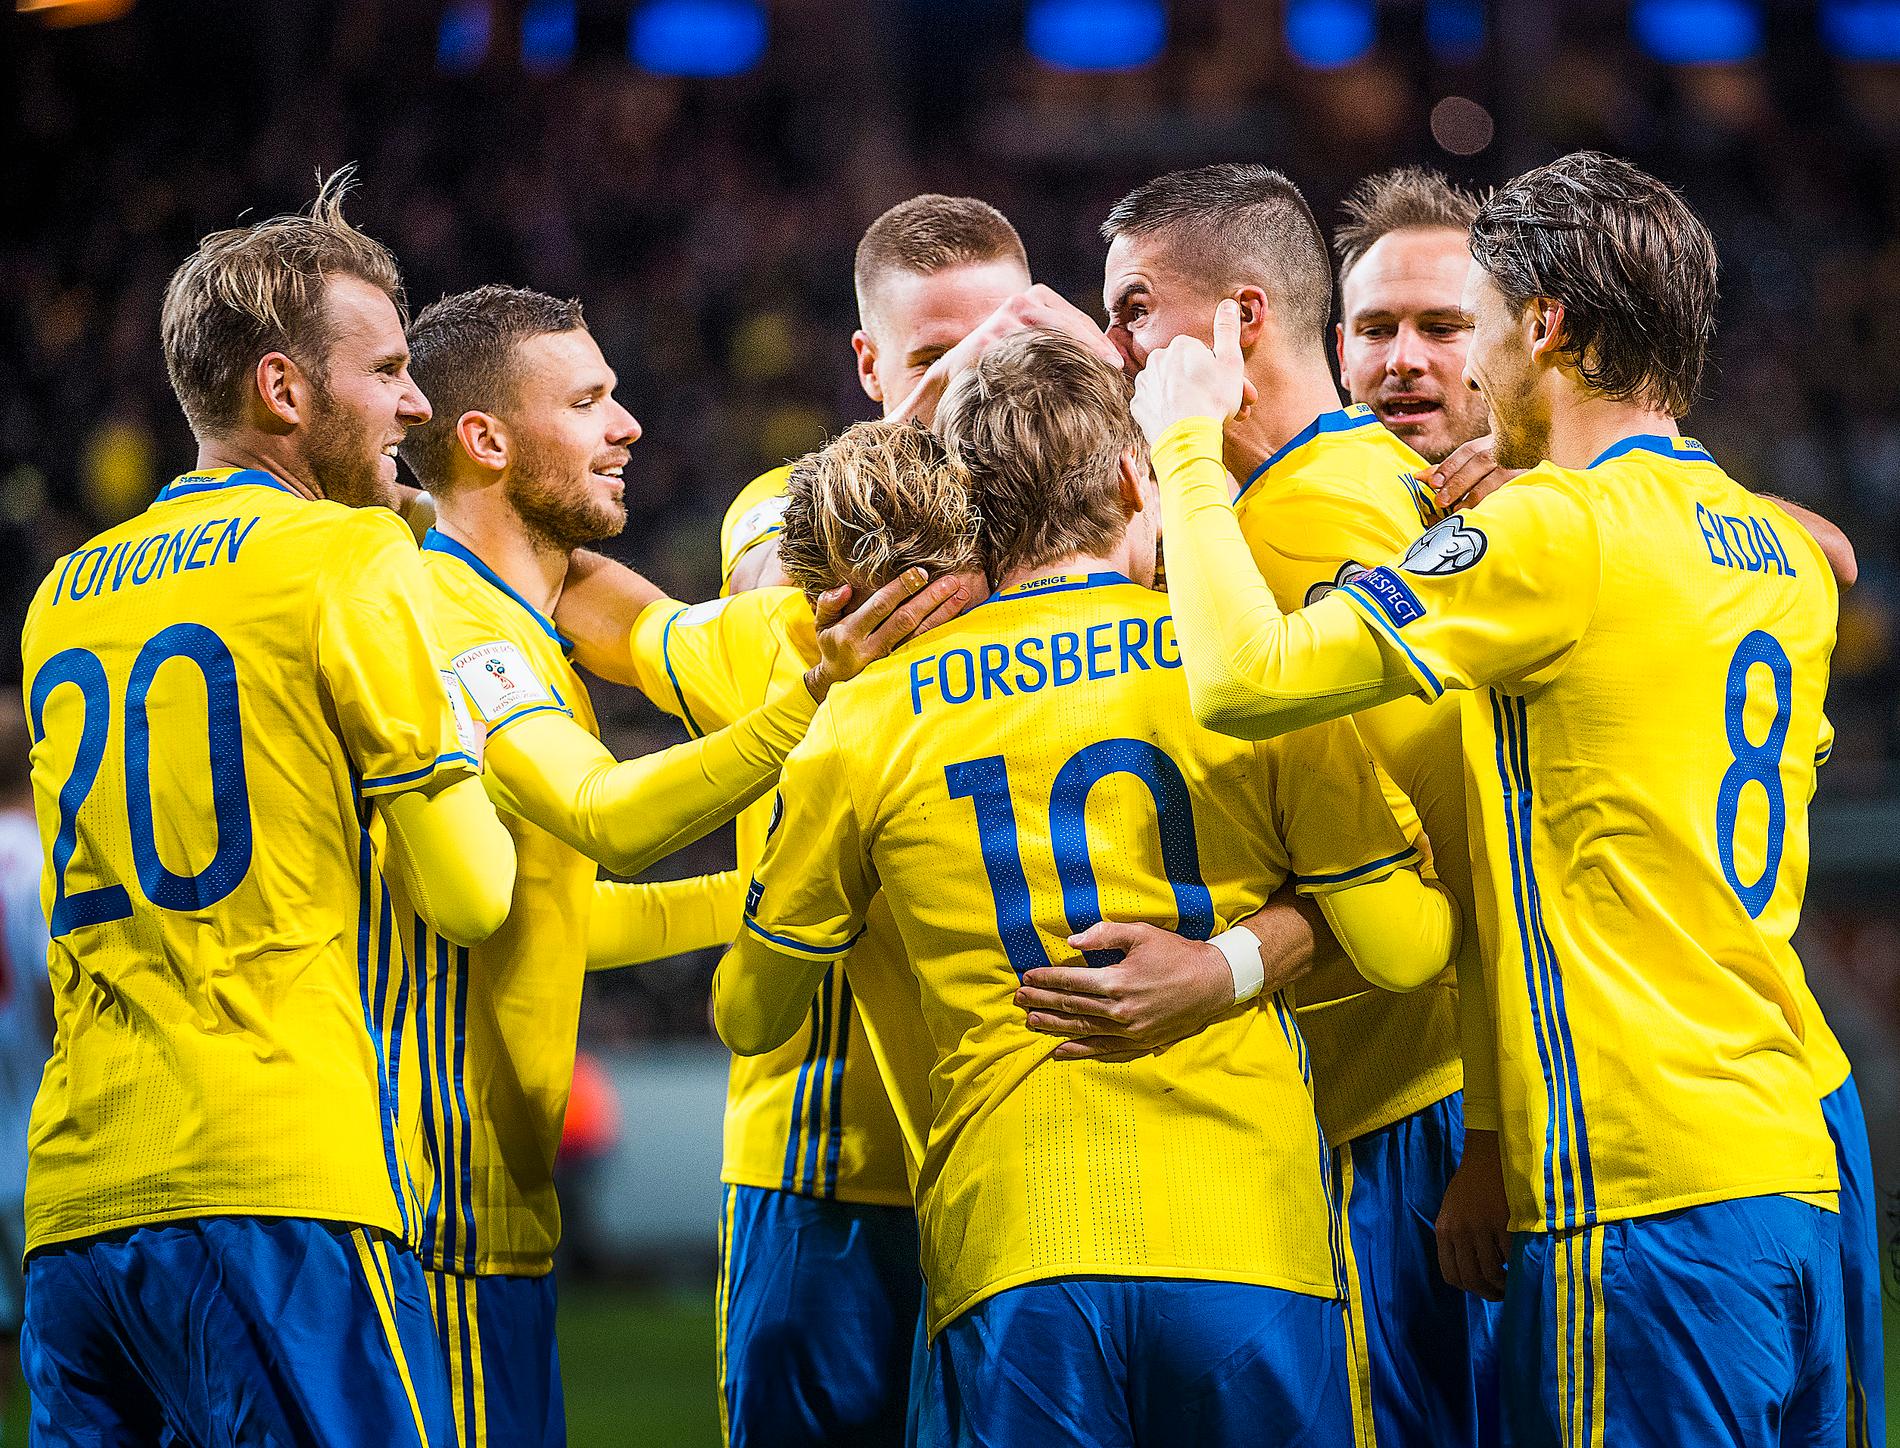 MERA MÅL. Emil Forsberg gjorde två mål när Sverige slog Vitryssland i första mötet. Blir det något  liknande i returen ser det mycket bra ut för Sveriges chanser att knipa andraplatsen i VM-kvalgruppen.